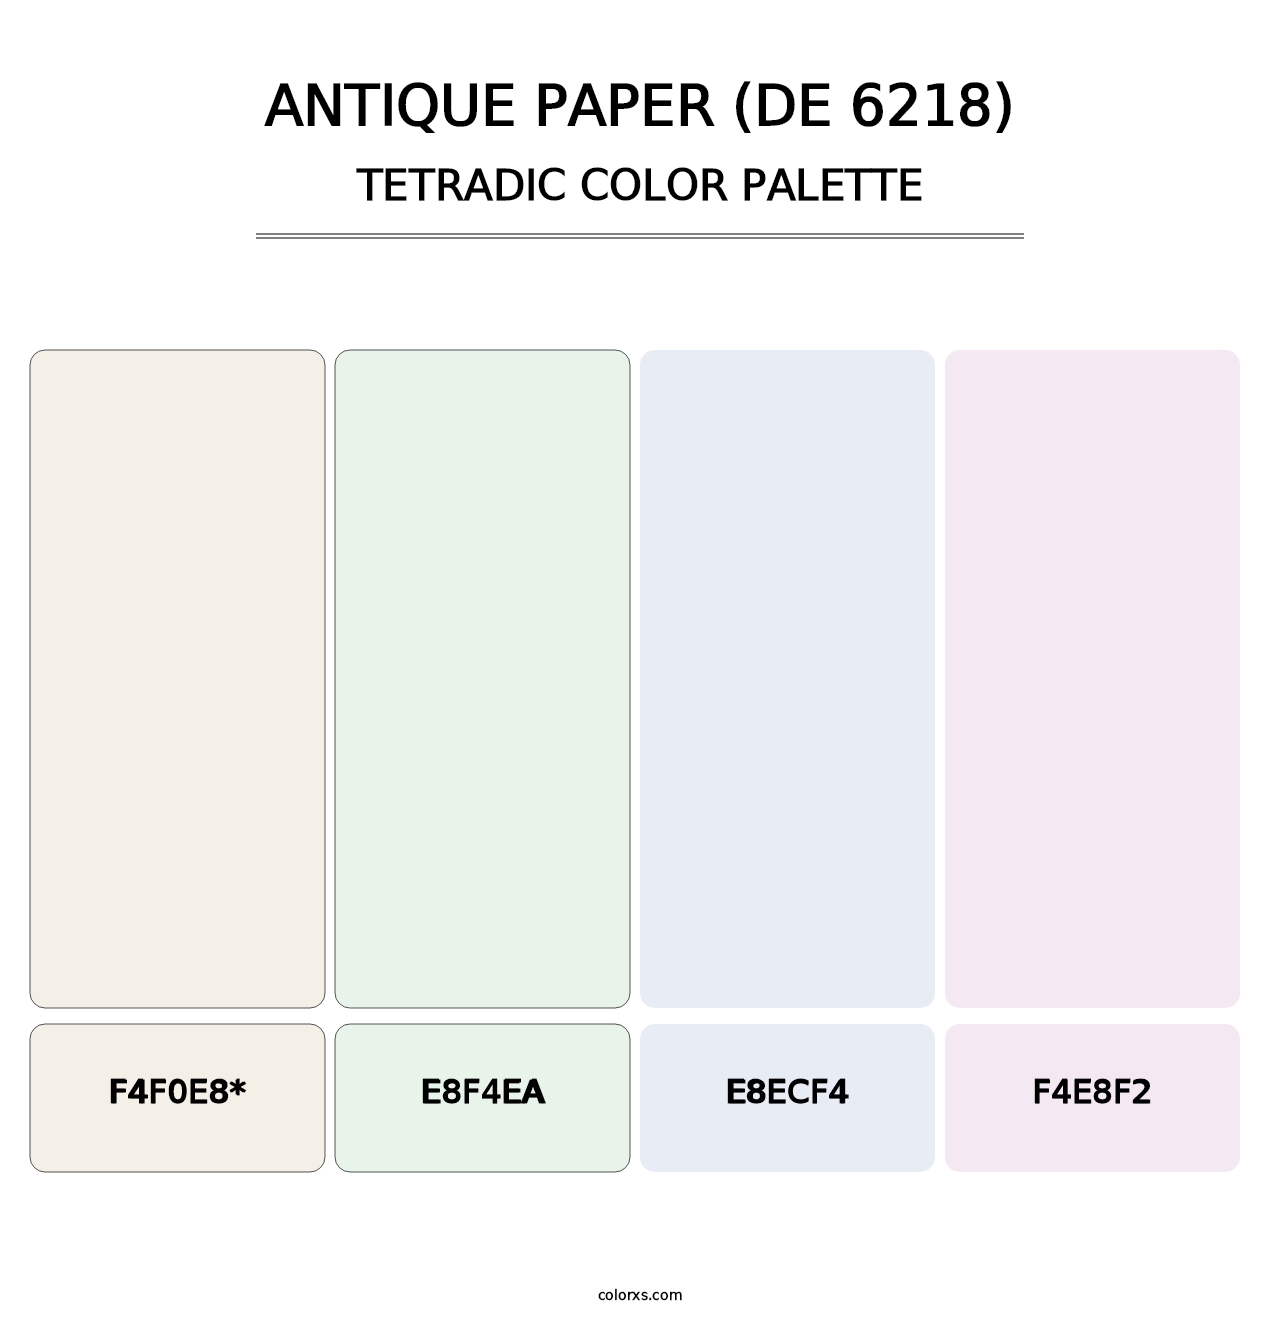 Antique Paper (DE 6218) - Tetradic Color Palette